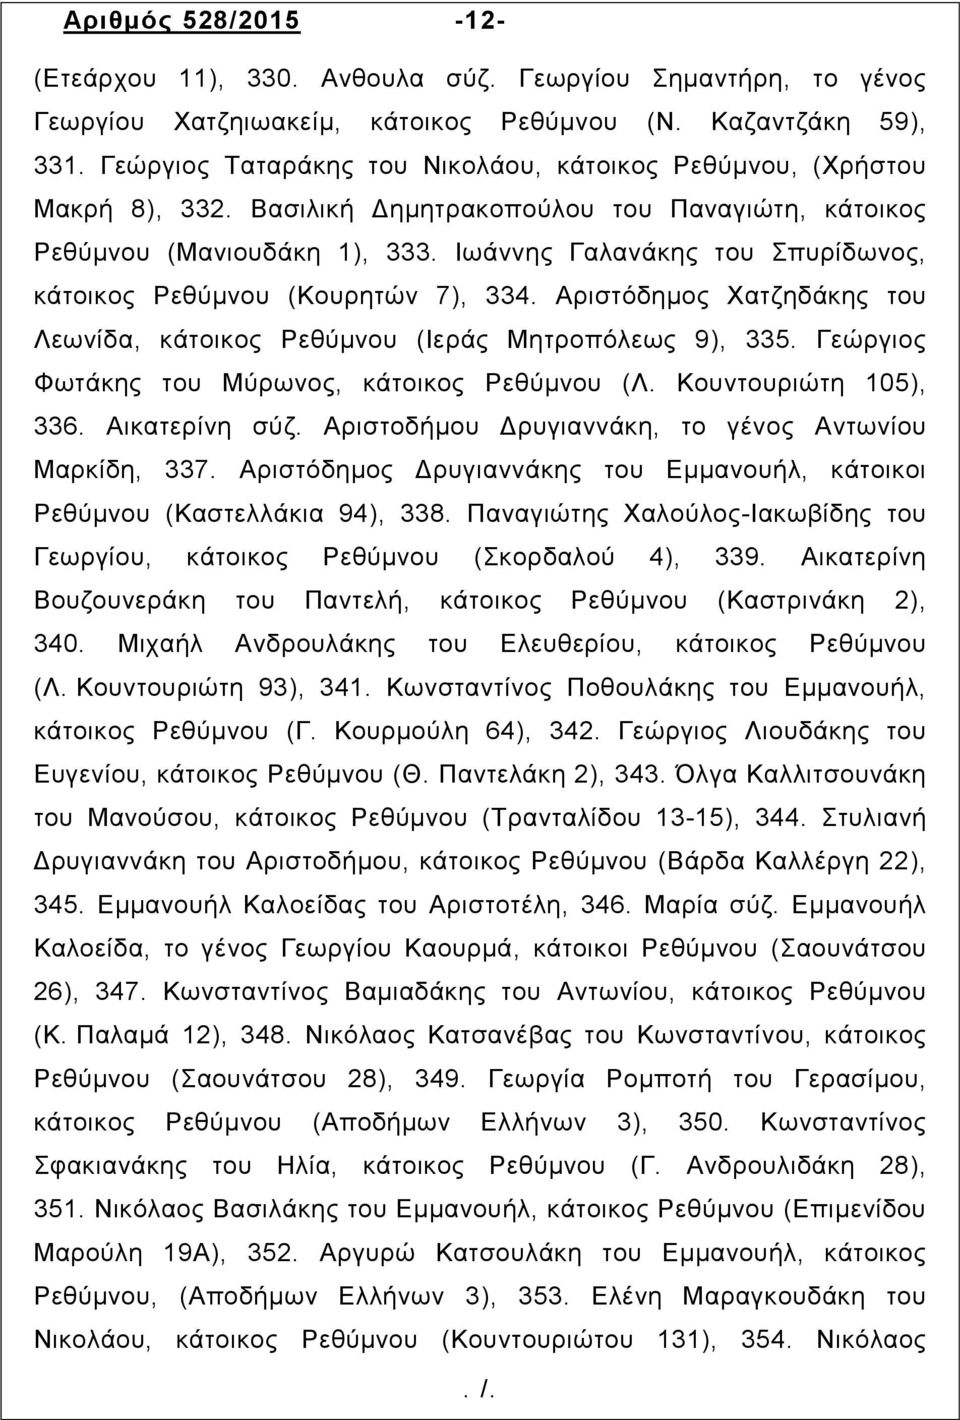 Ιωάννης Γαλανάκης του Σπυρίδωνος, κάτοικος Ρεθύµνου (Κουρητών 7), 334. Αριστόδημος Χατζηδάκης του Λεωνίδα, κάτοικος Ρεθύµνου (Ιεράς Μητροπόλεως 9), 335.